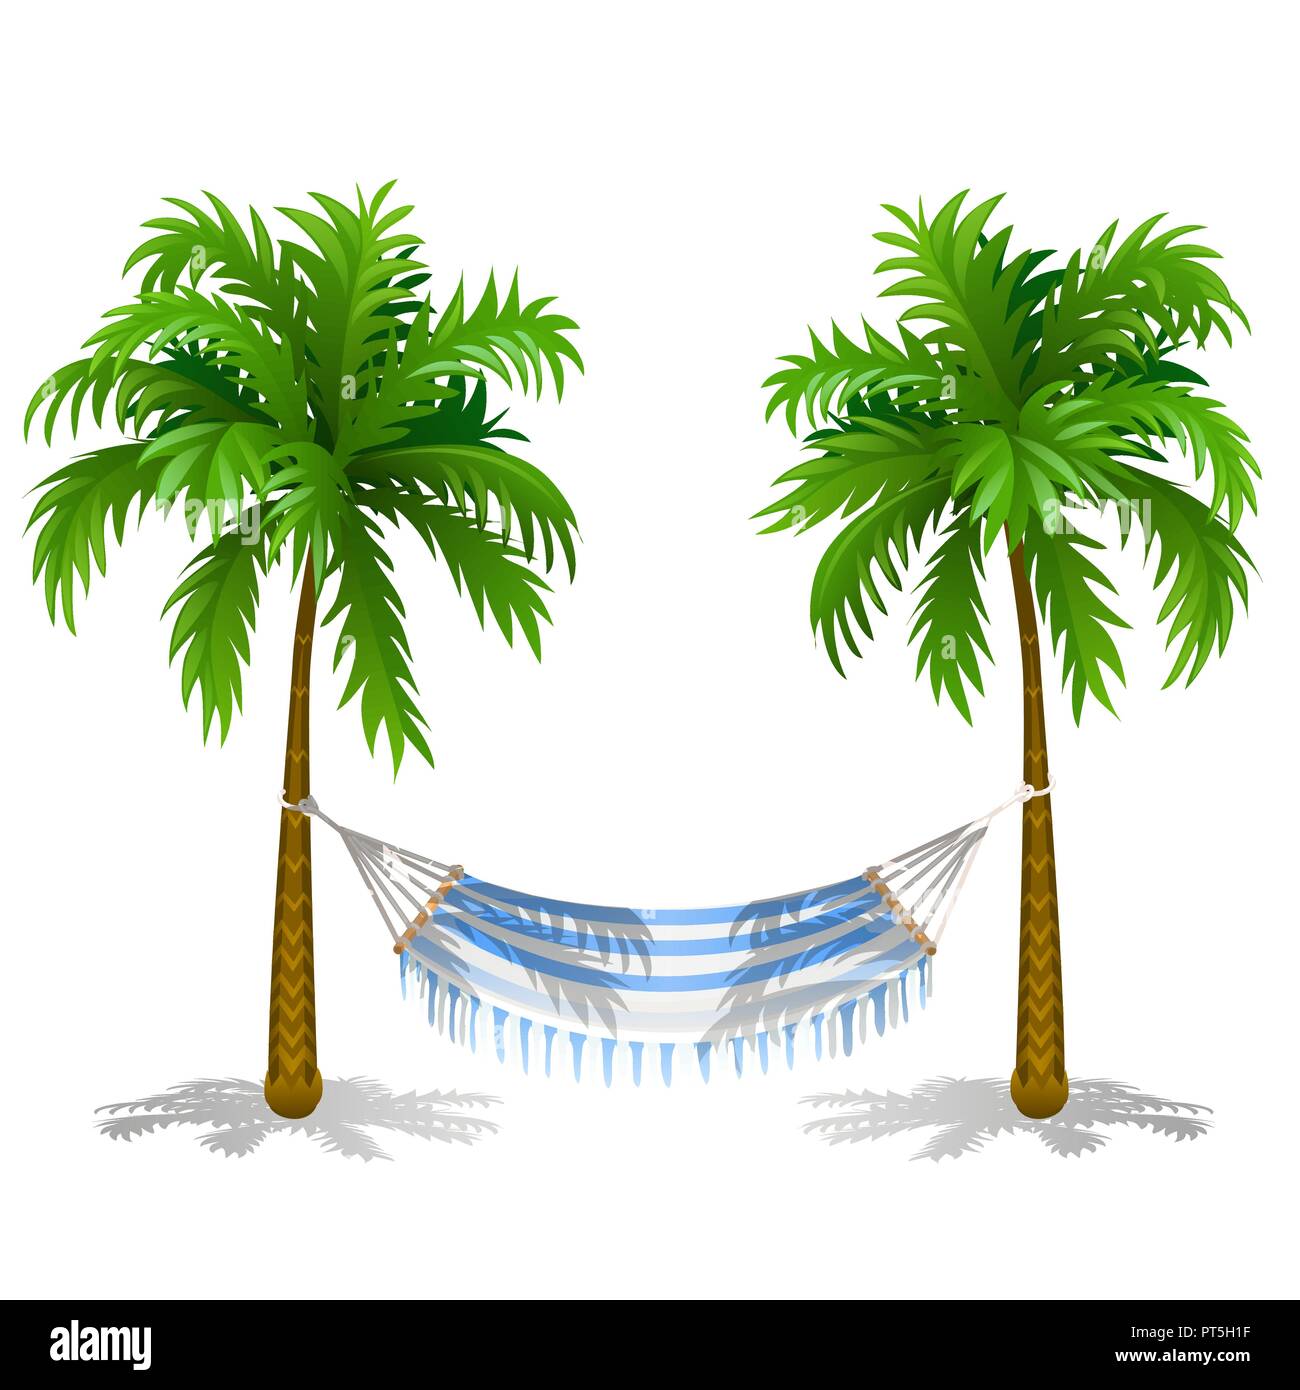 Hamac entre deux palmiers isolé sur fond blanc. Service sur la plage.  Cartoon Vector illustration close-up Image Vectorielle Stock - Alamy